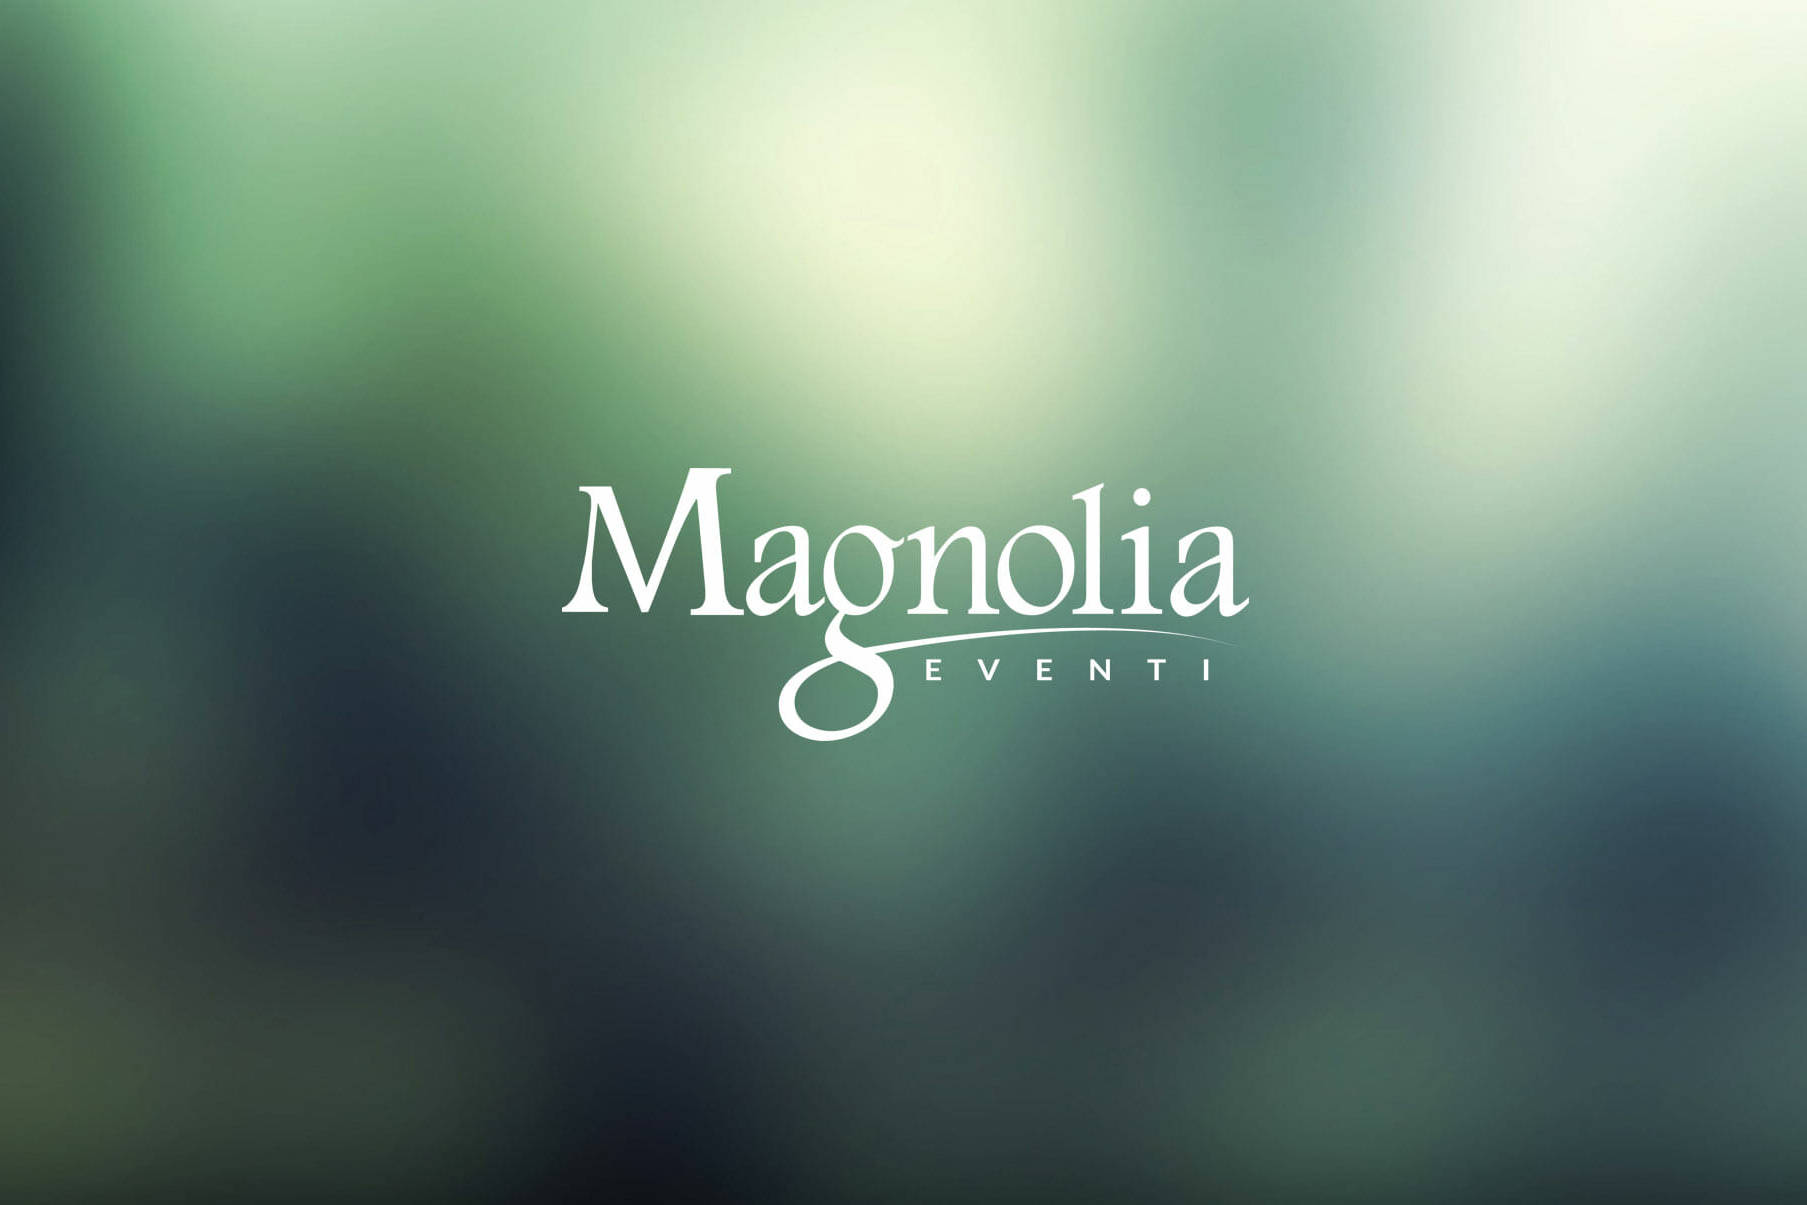 Il nuovo sito di Magnolia Eventi